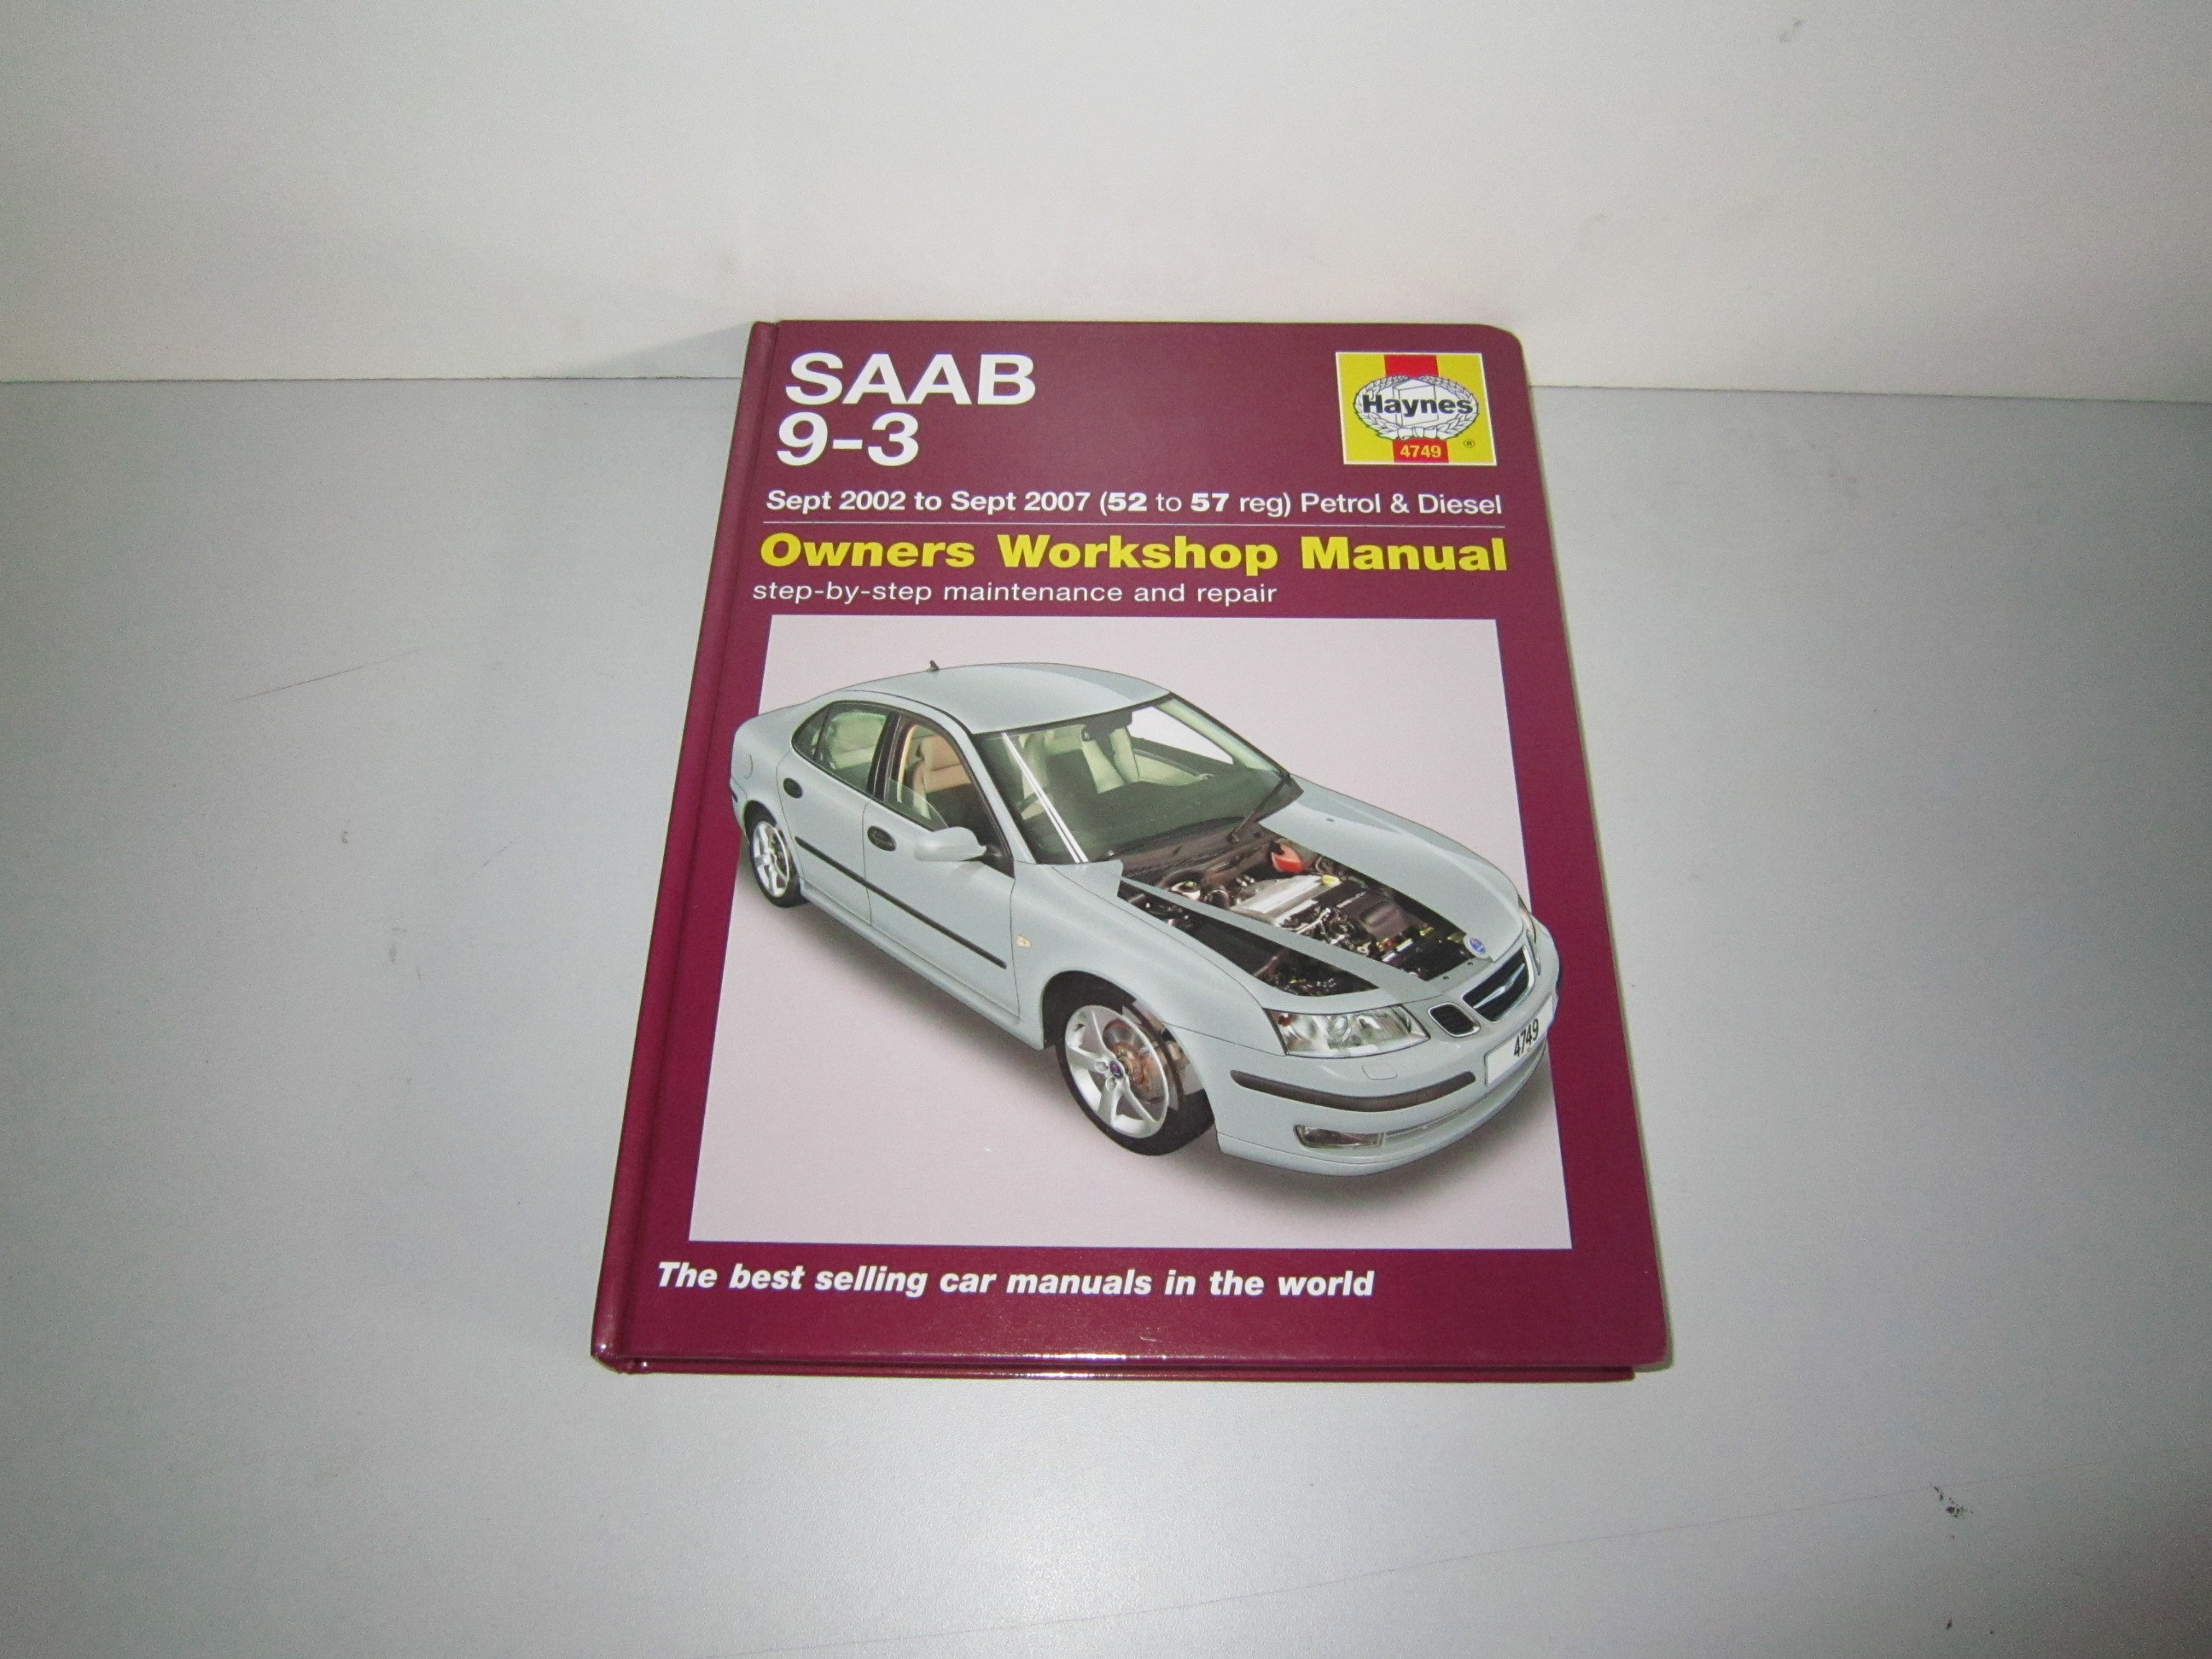 Haynes Werkplaatshandboek Saab 9-3 versie 2 Sport bouwjaar 2002-2007